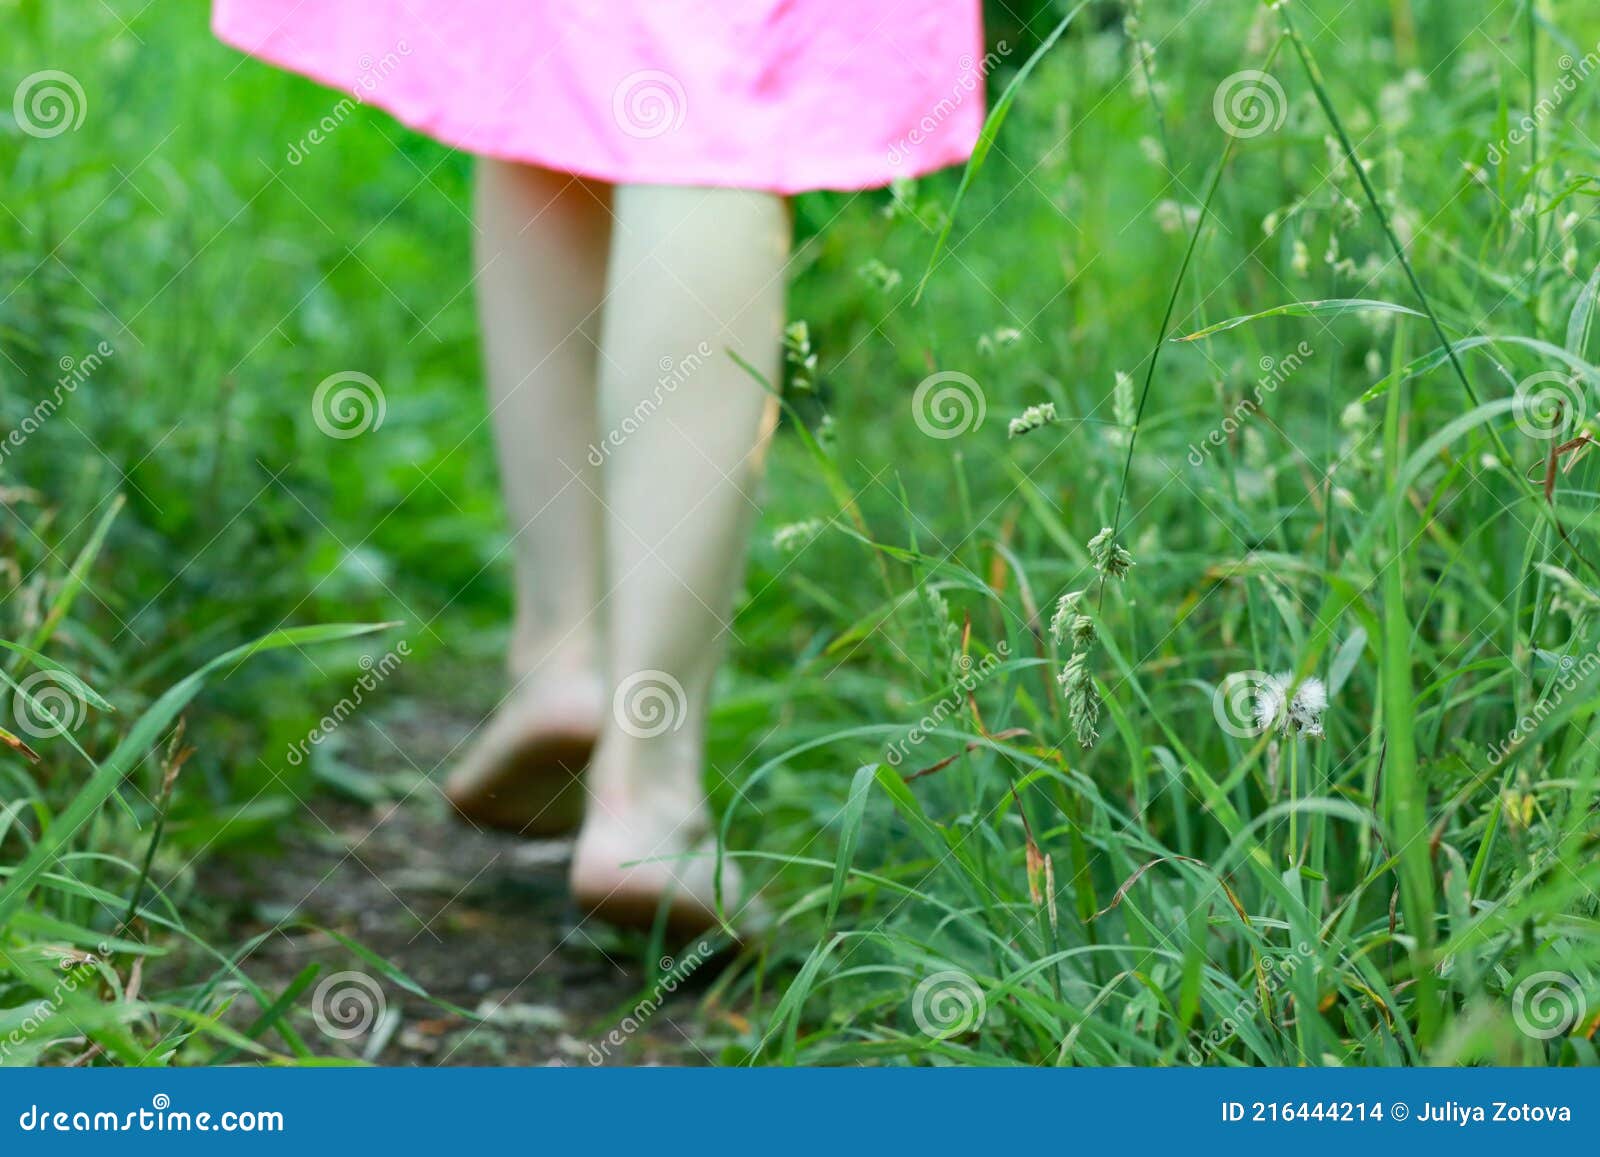 小女孩低角度有赤脚的 库存照片. 图片 包括有 少许, 偶然, 童年, 白种人, 牛仔布, 女性, 查找 - 37499754